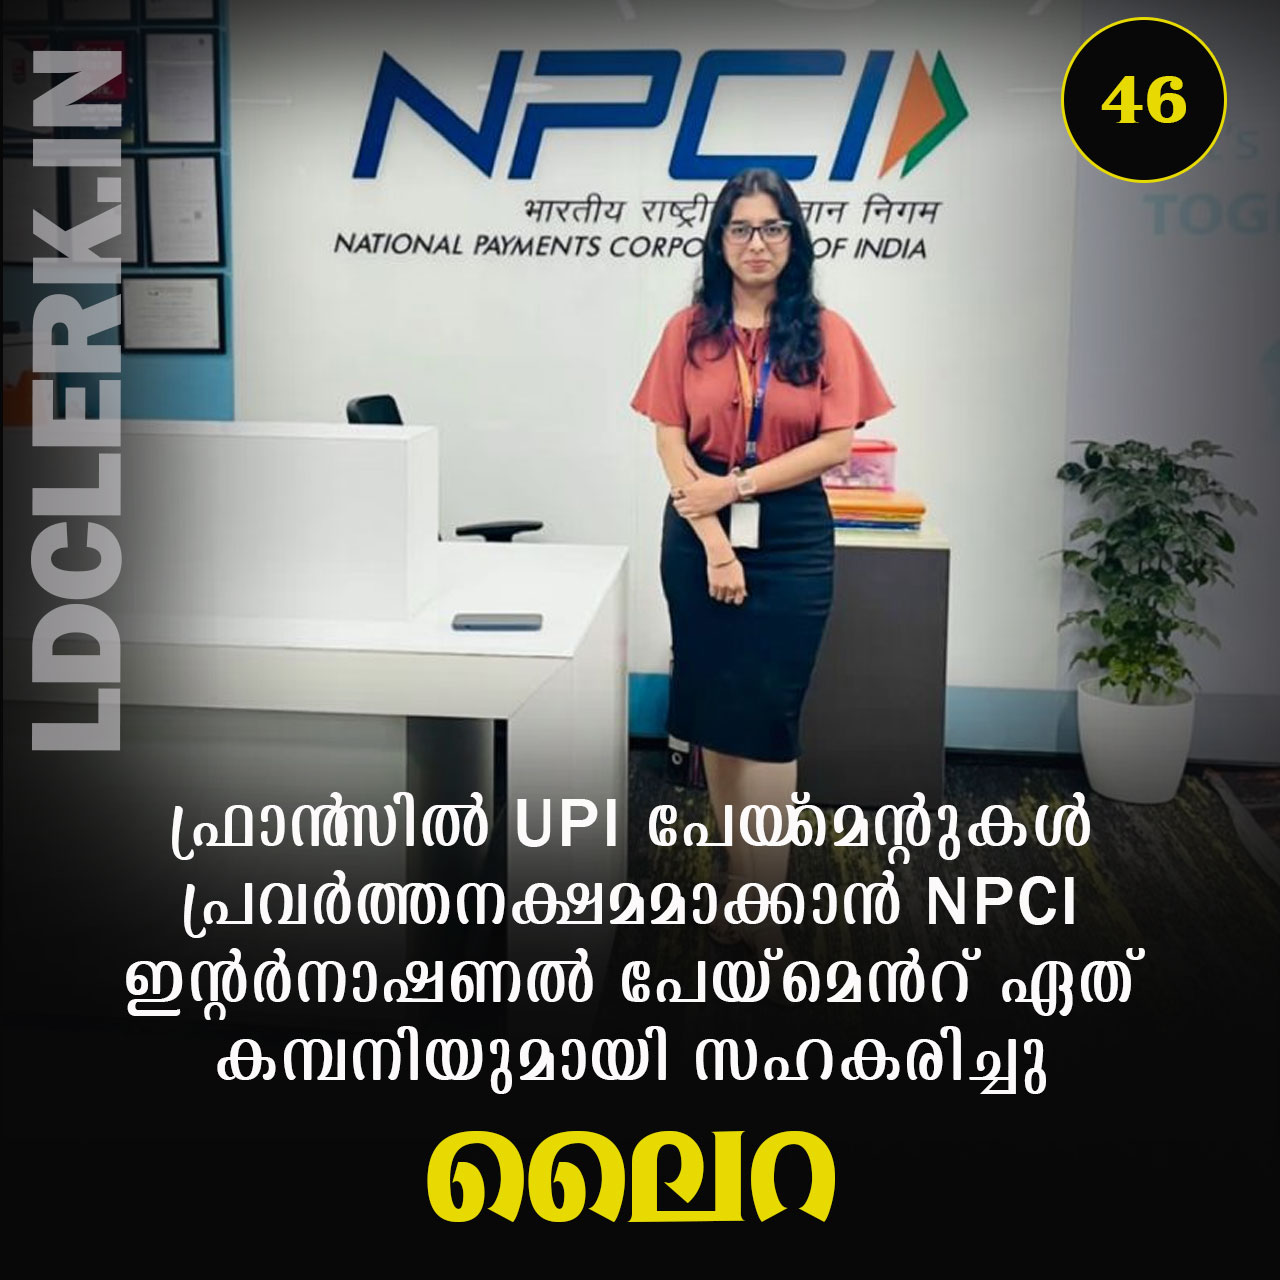 NPCI partnered with Lira